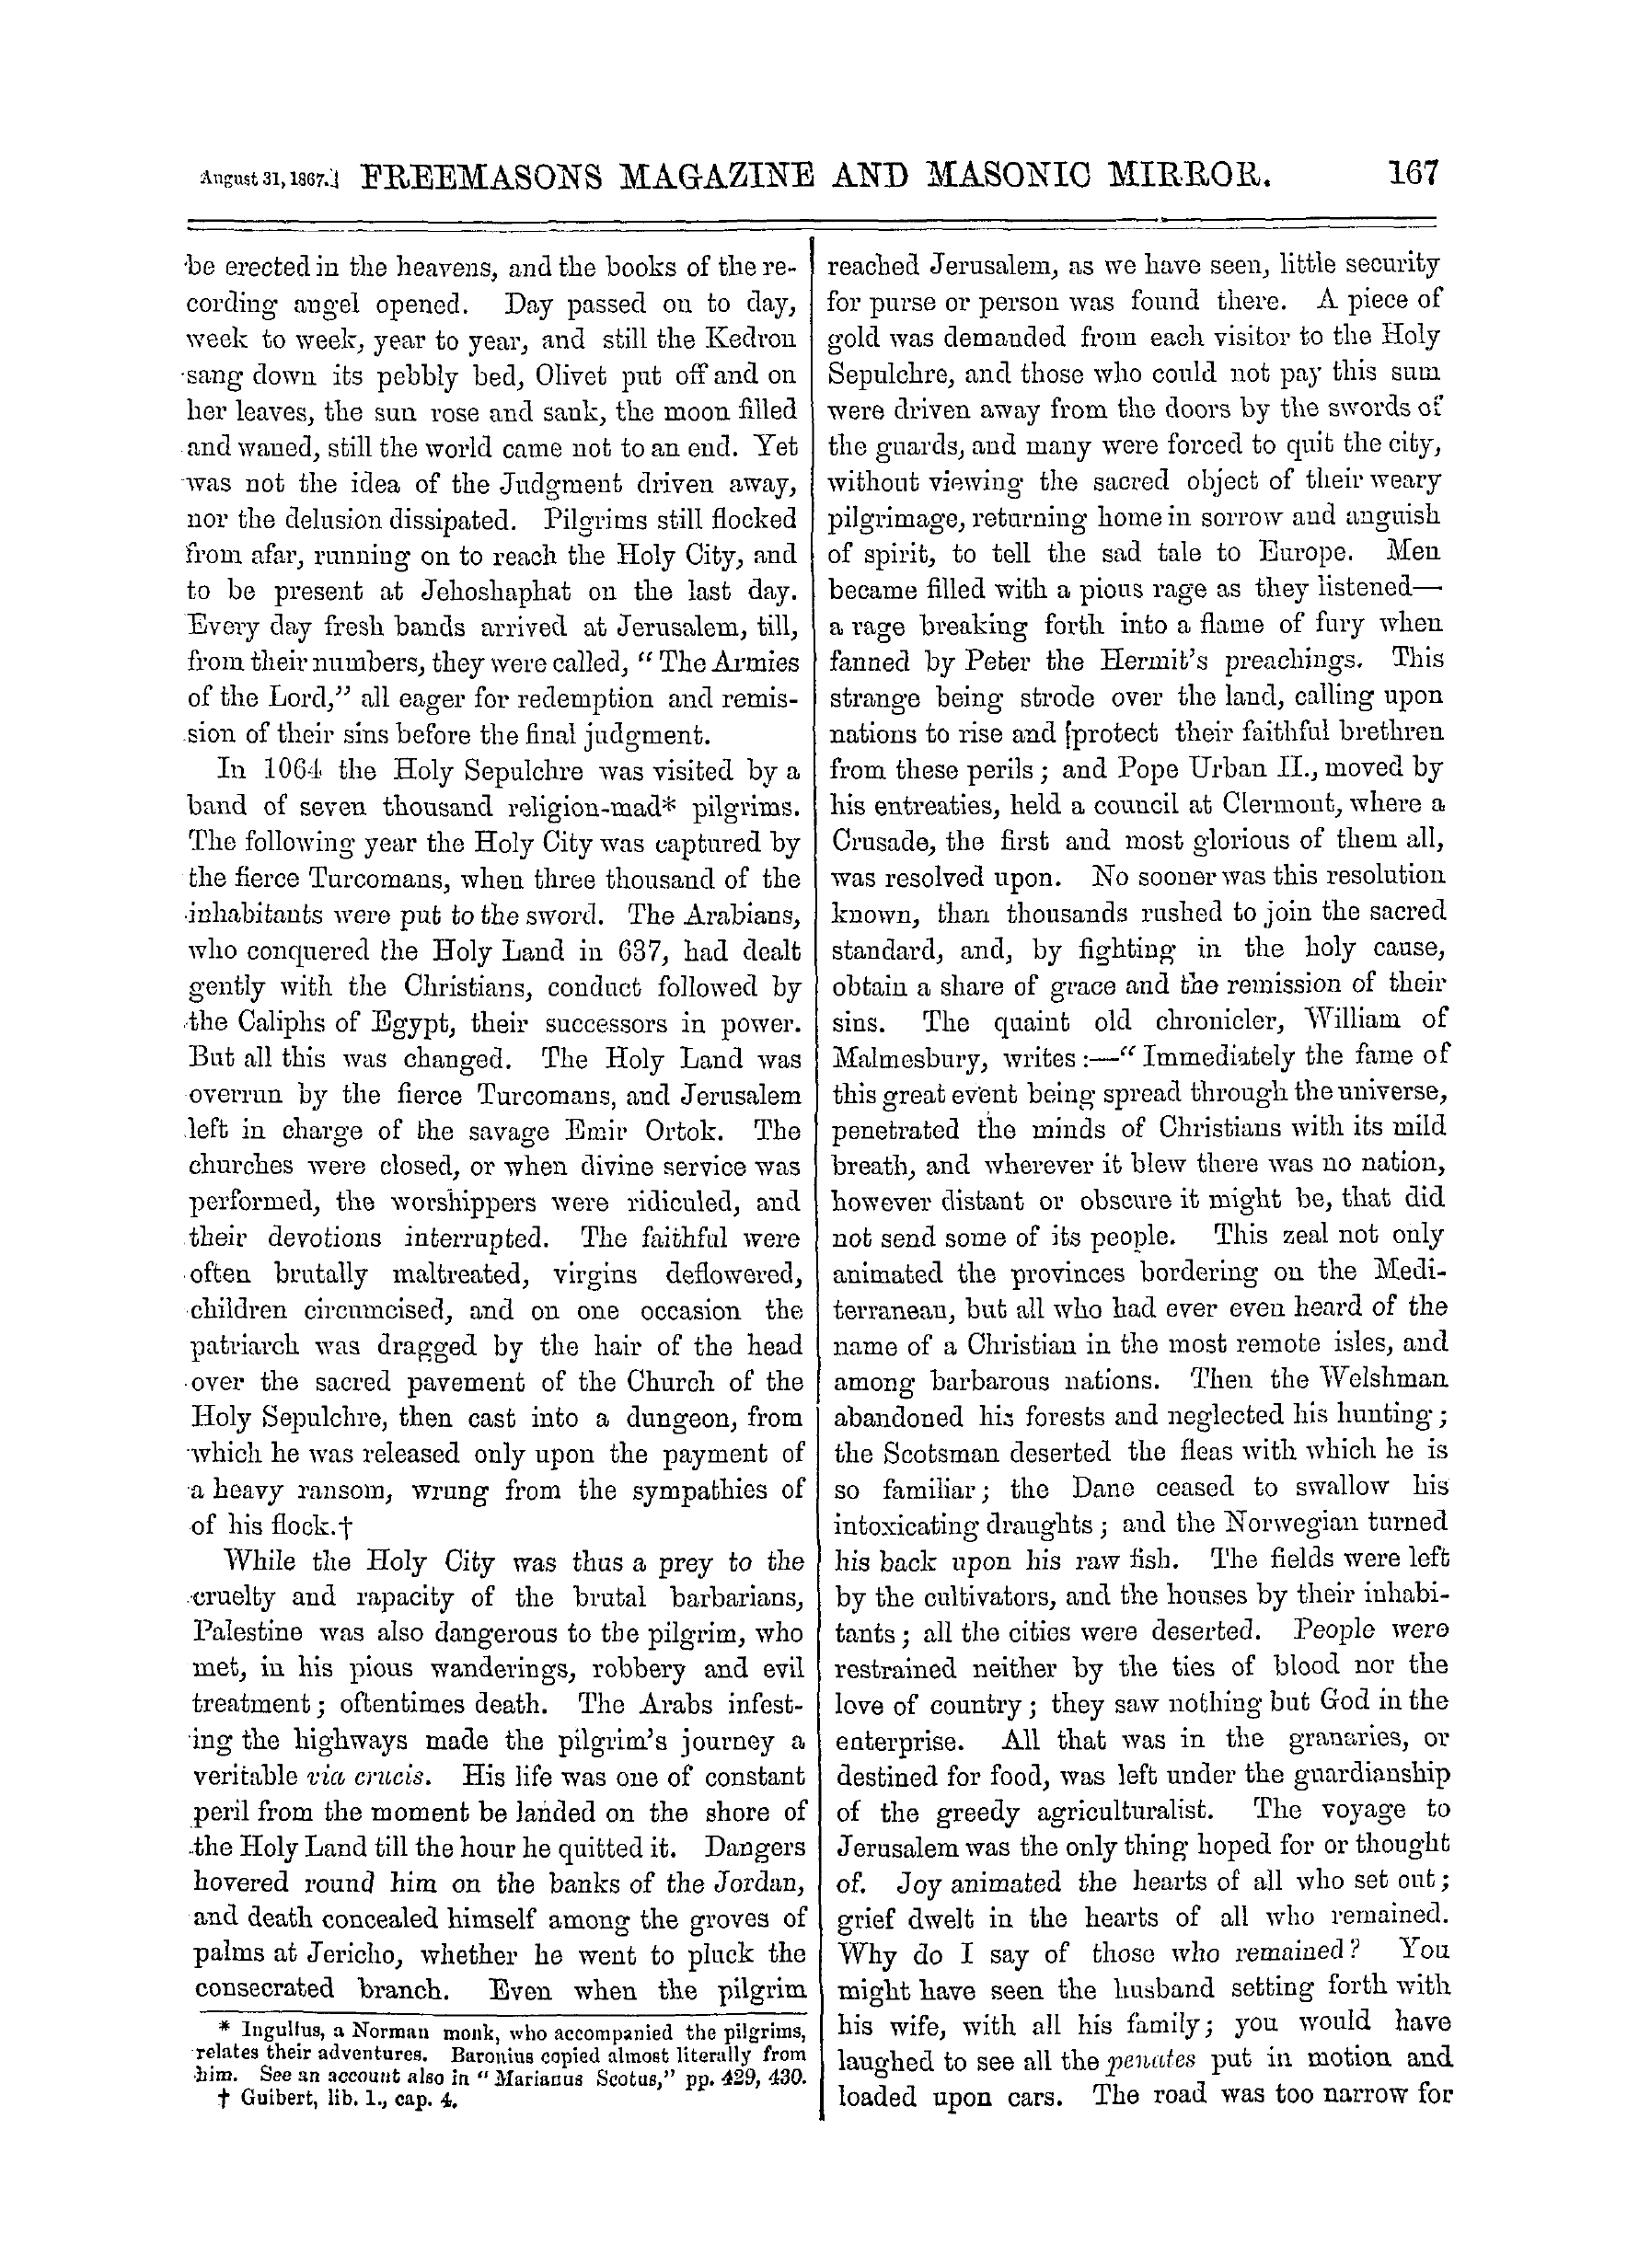 The Freemasons' Monthly Magazine: 1867-08-31: 7